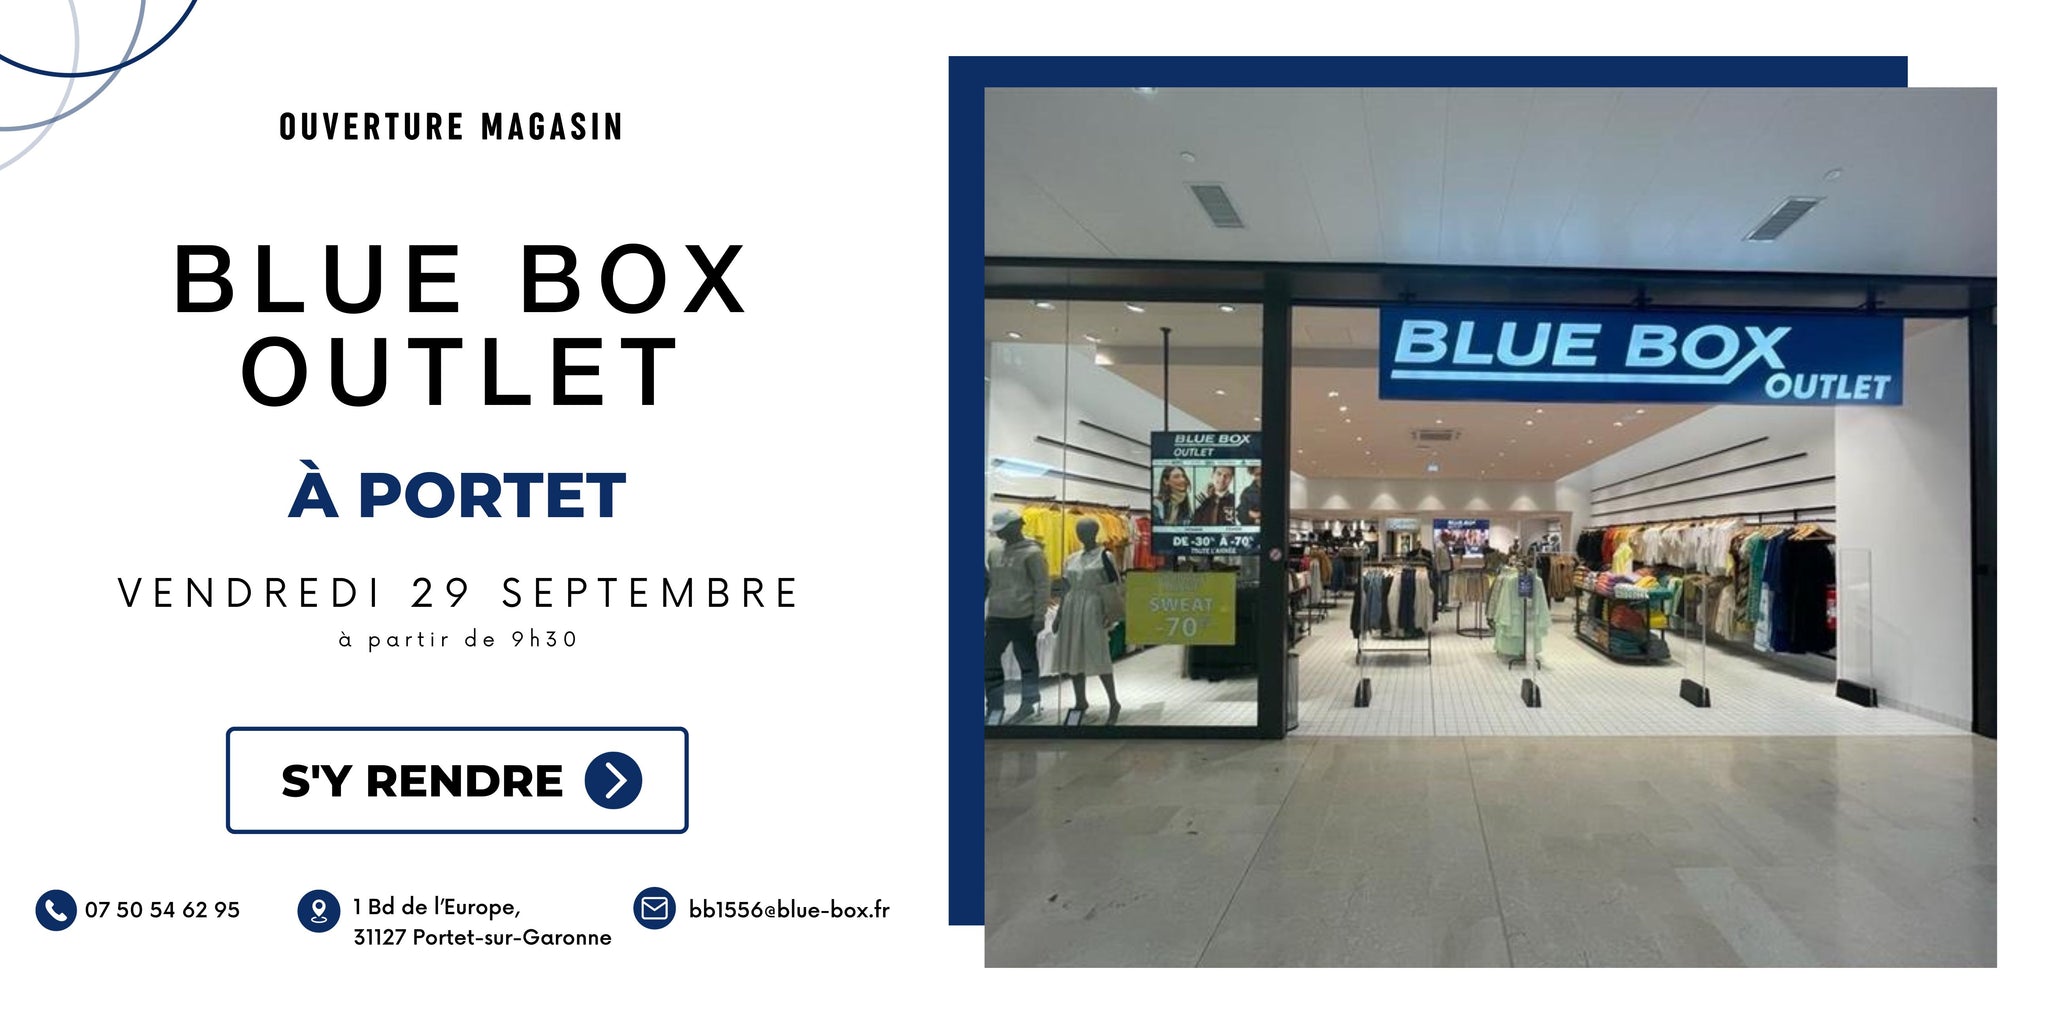 Ouverture d’un nouveau magasin Blue Box à Portet sur Garonne